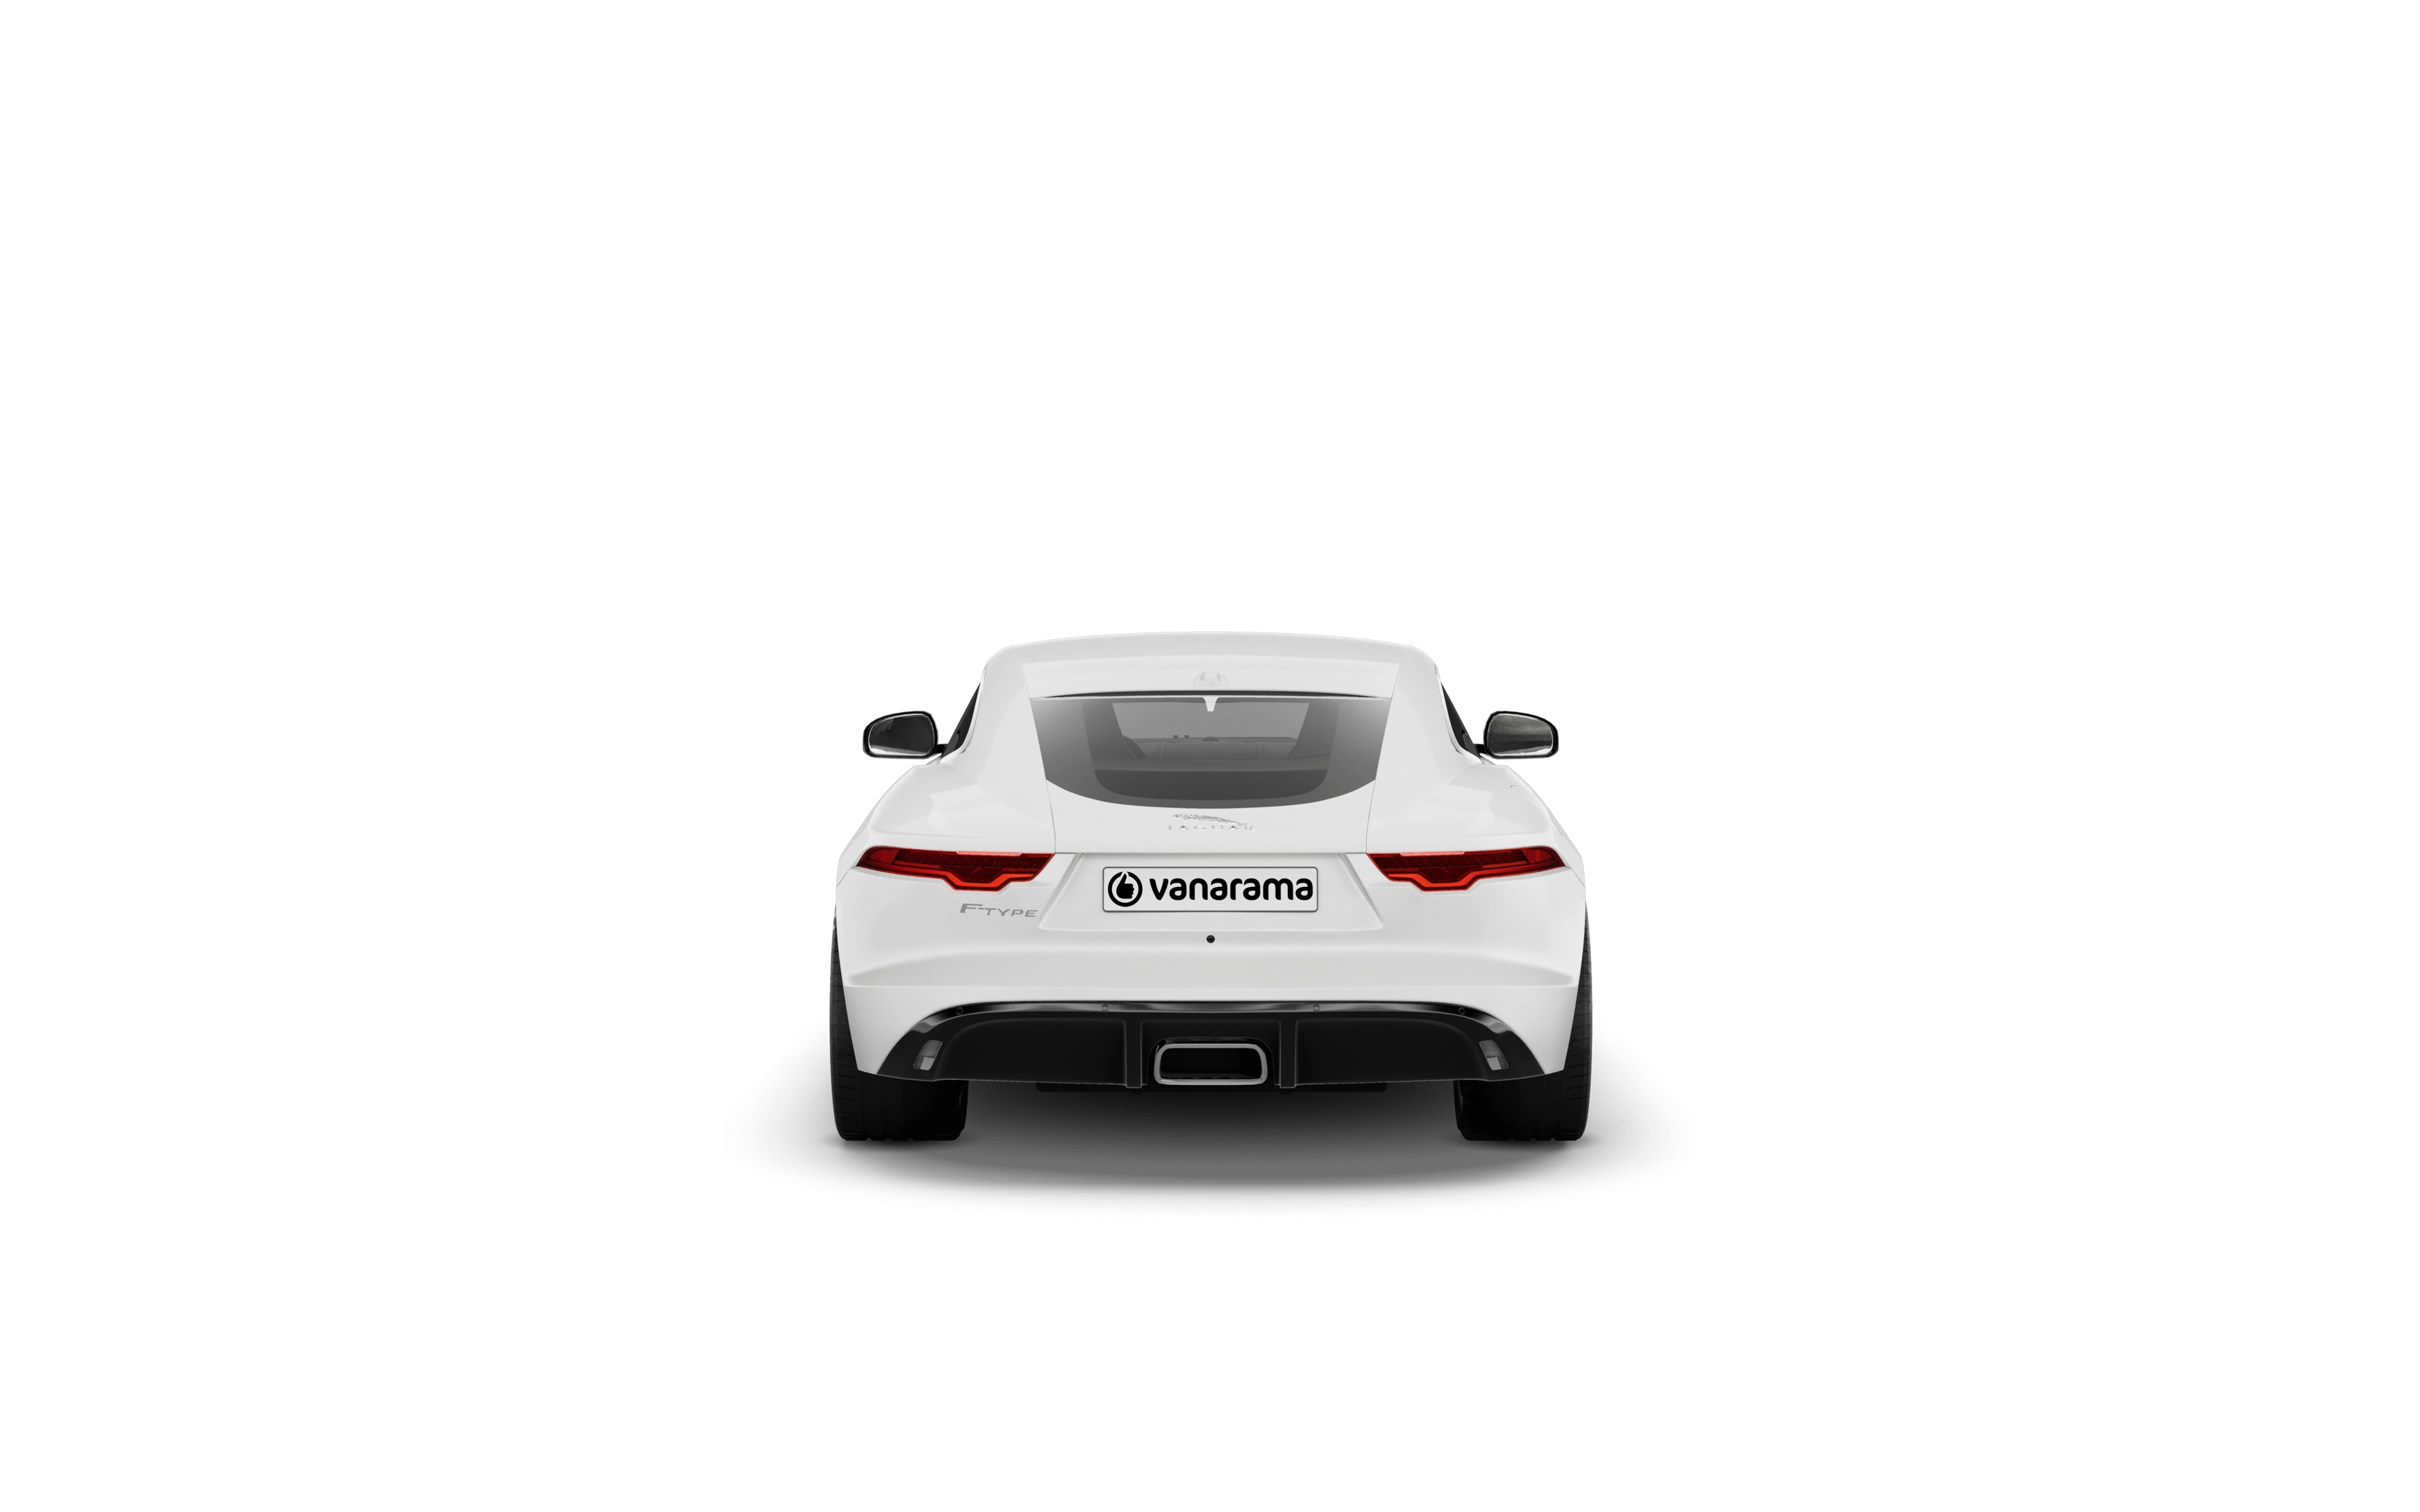 Jaguar f-type coupe 5.0 p450 supercharged v8 75 plus 2 doors auto